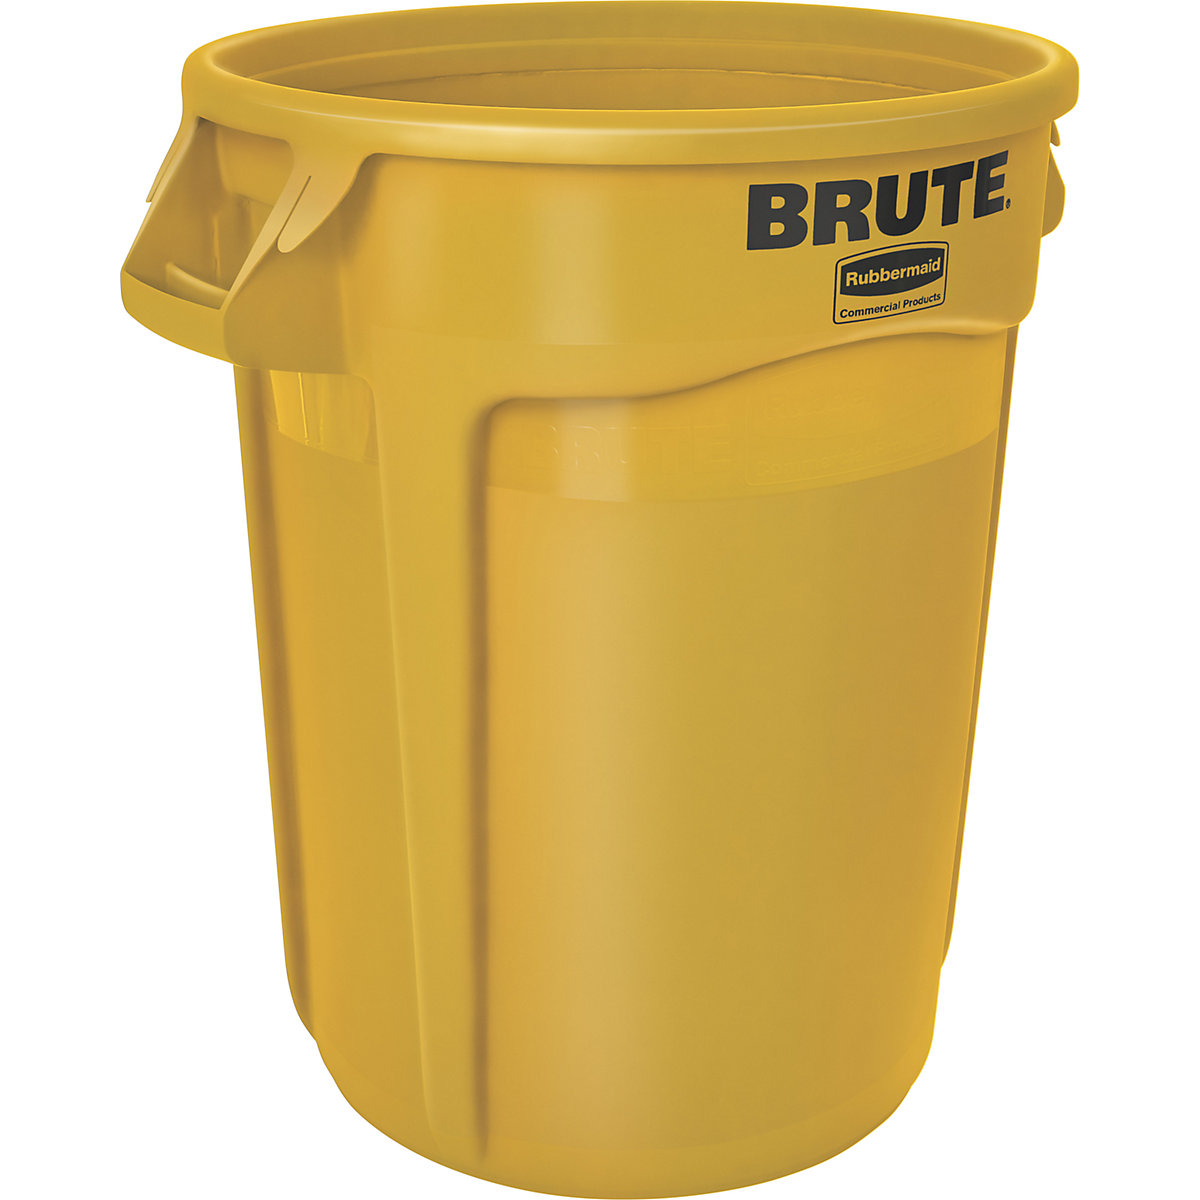 Universalcontainer BRUTE®, rund Rubbermaid, Inhalt 121 l, gelb